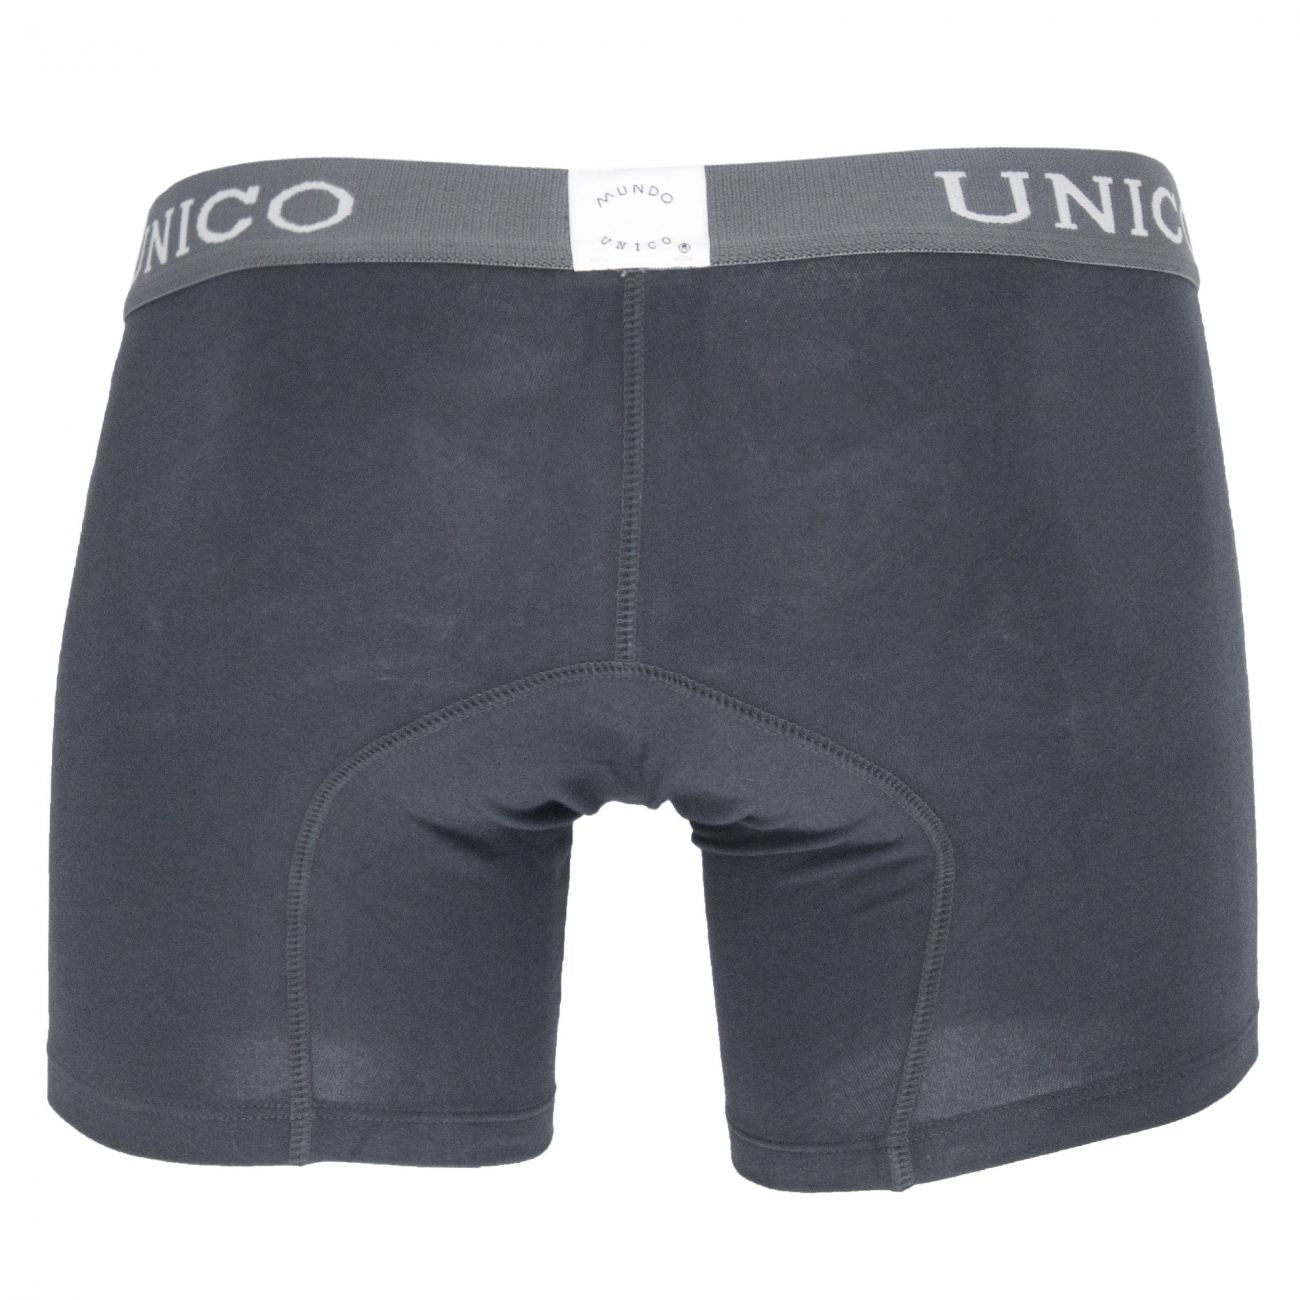 Unico (9612010020596) Boxer Briefs Asfalto Cotton